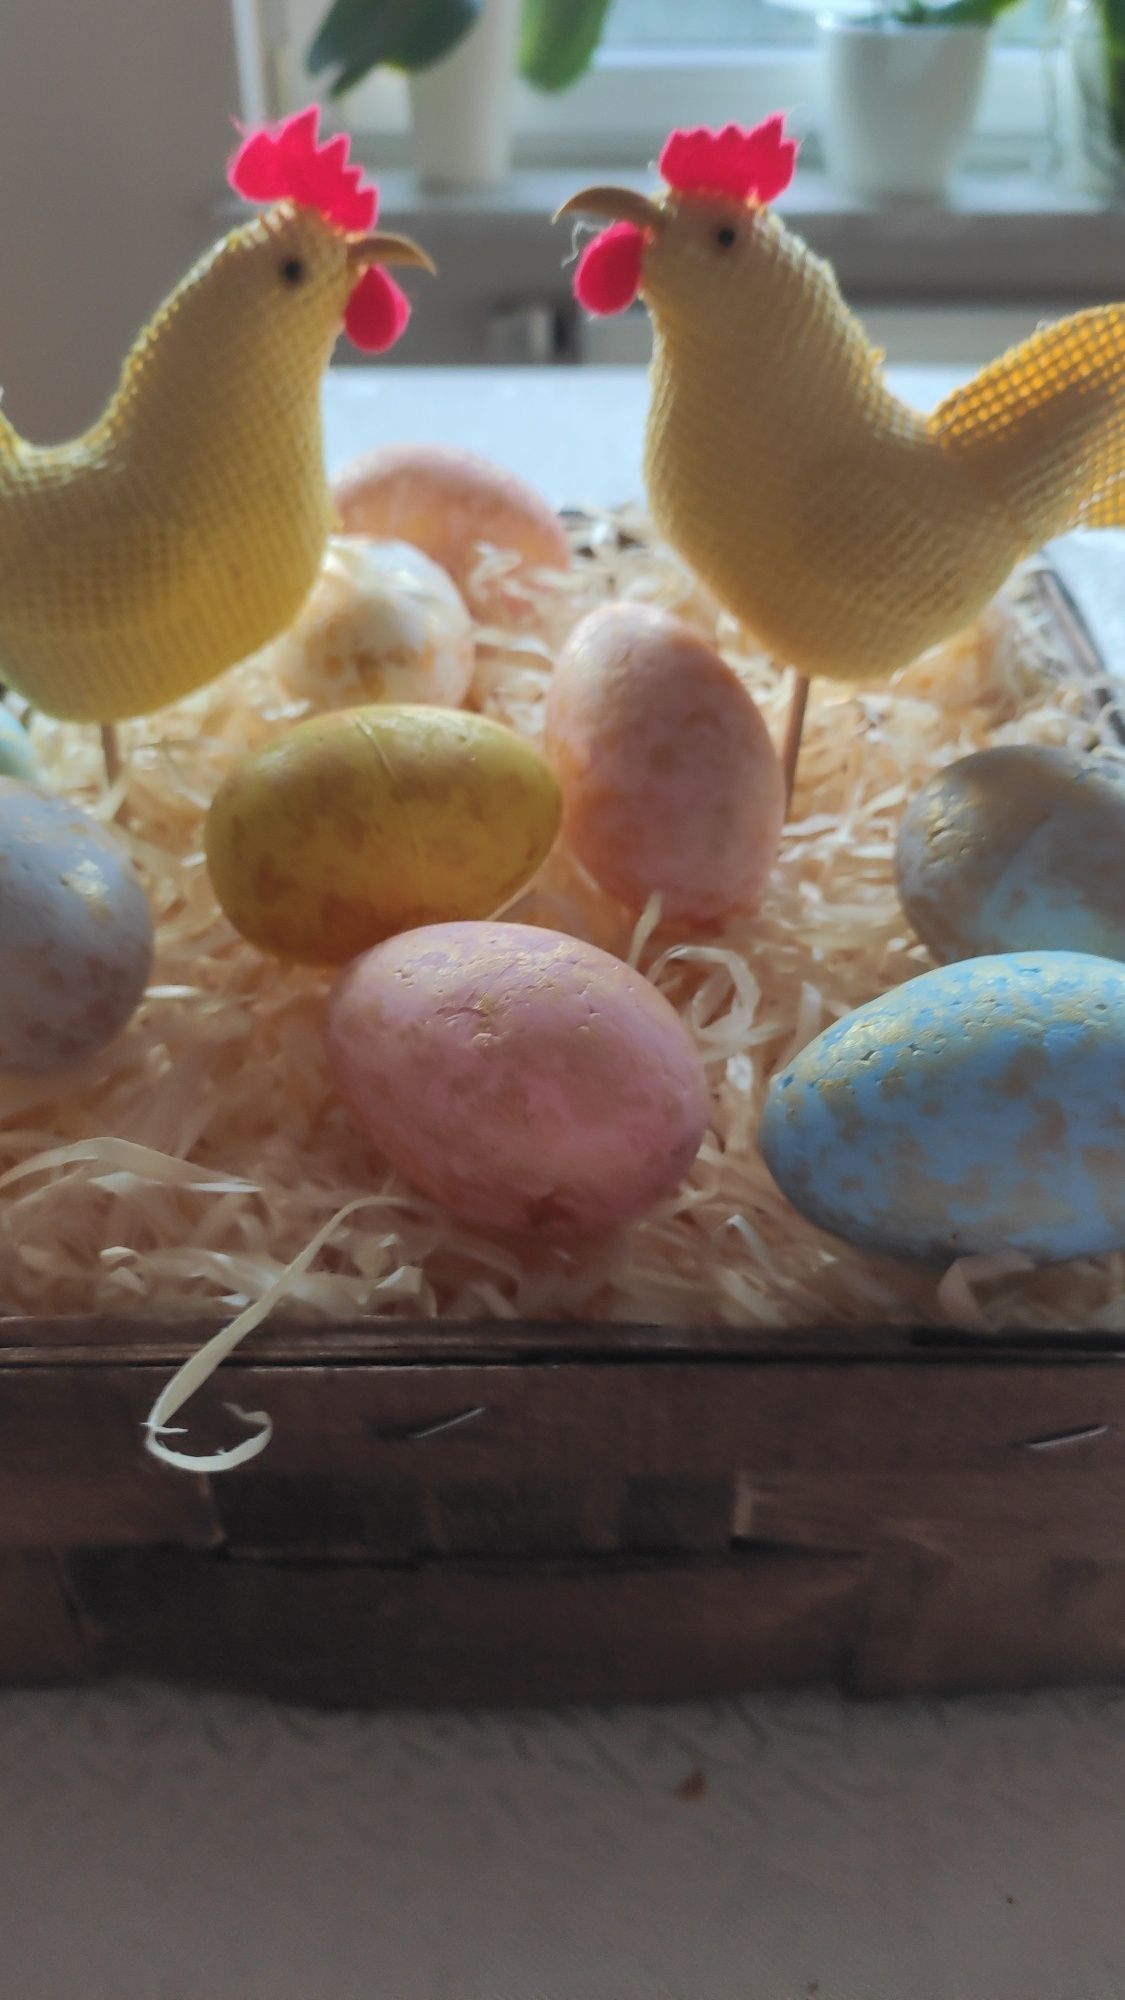 Dekoracja wielkanocna koszyk z jajkami i kurkami